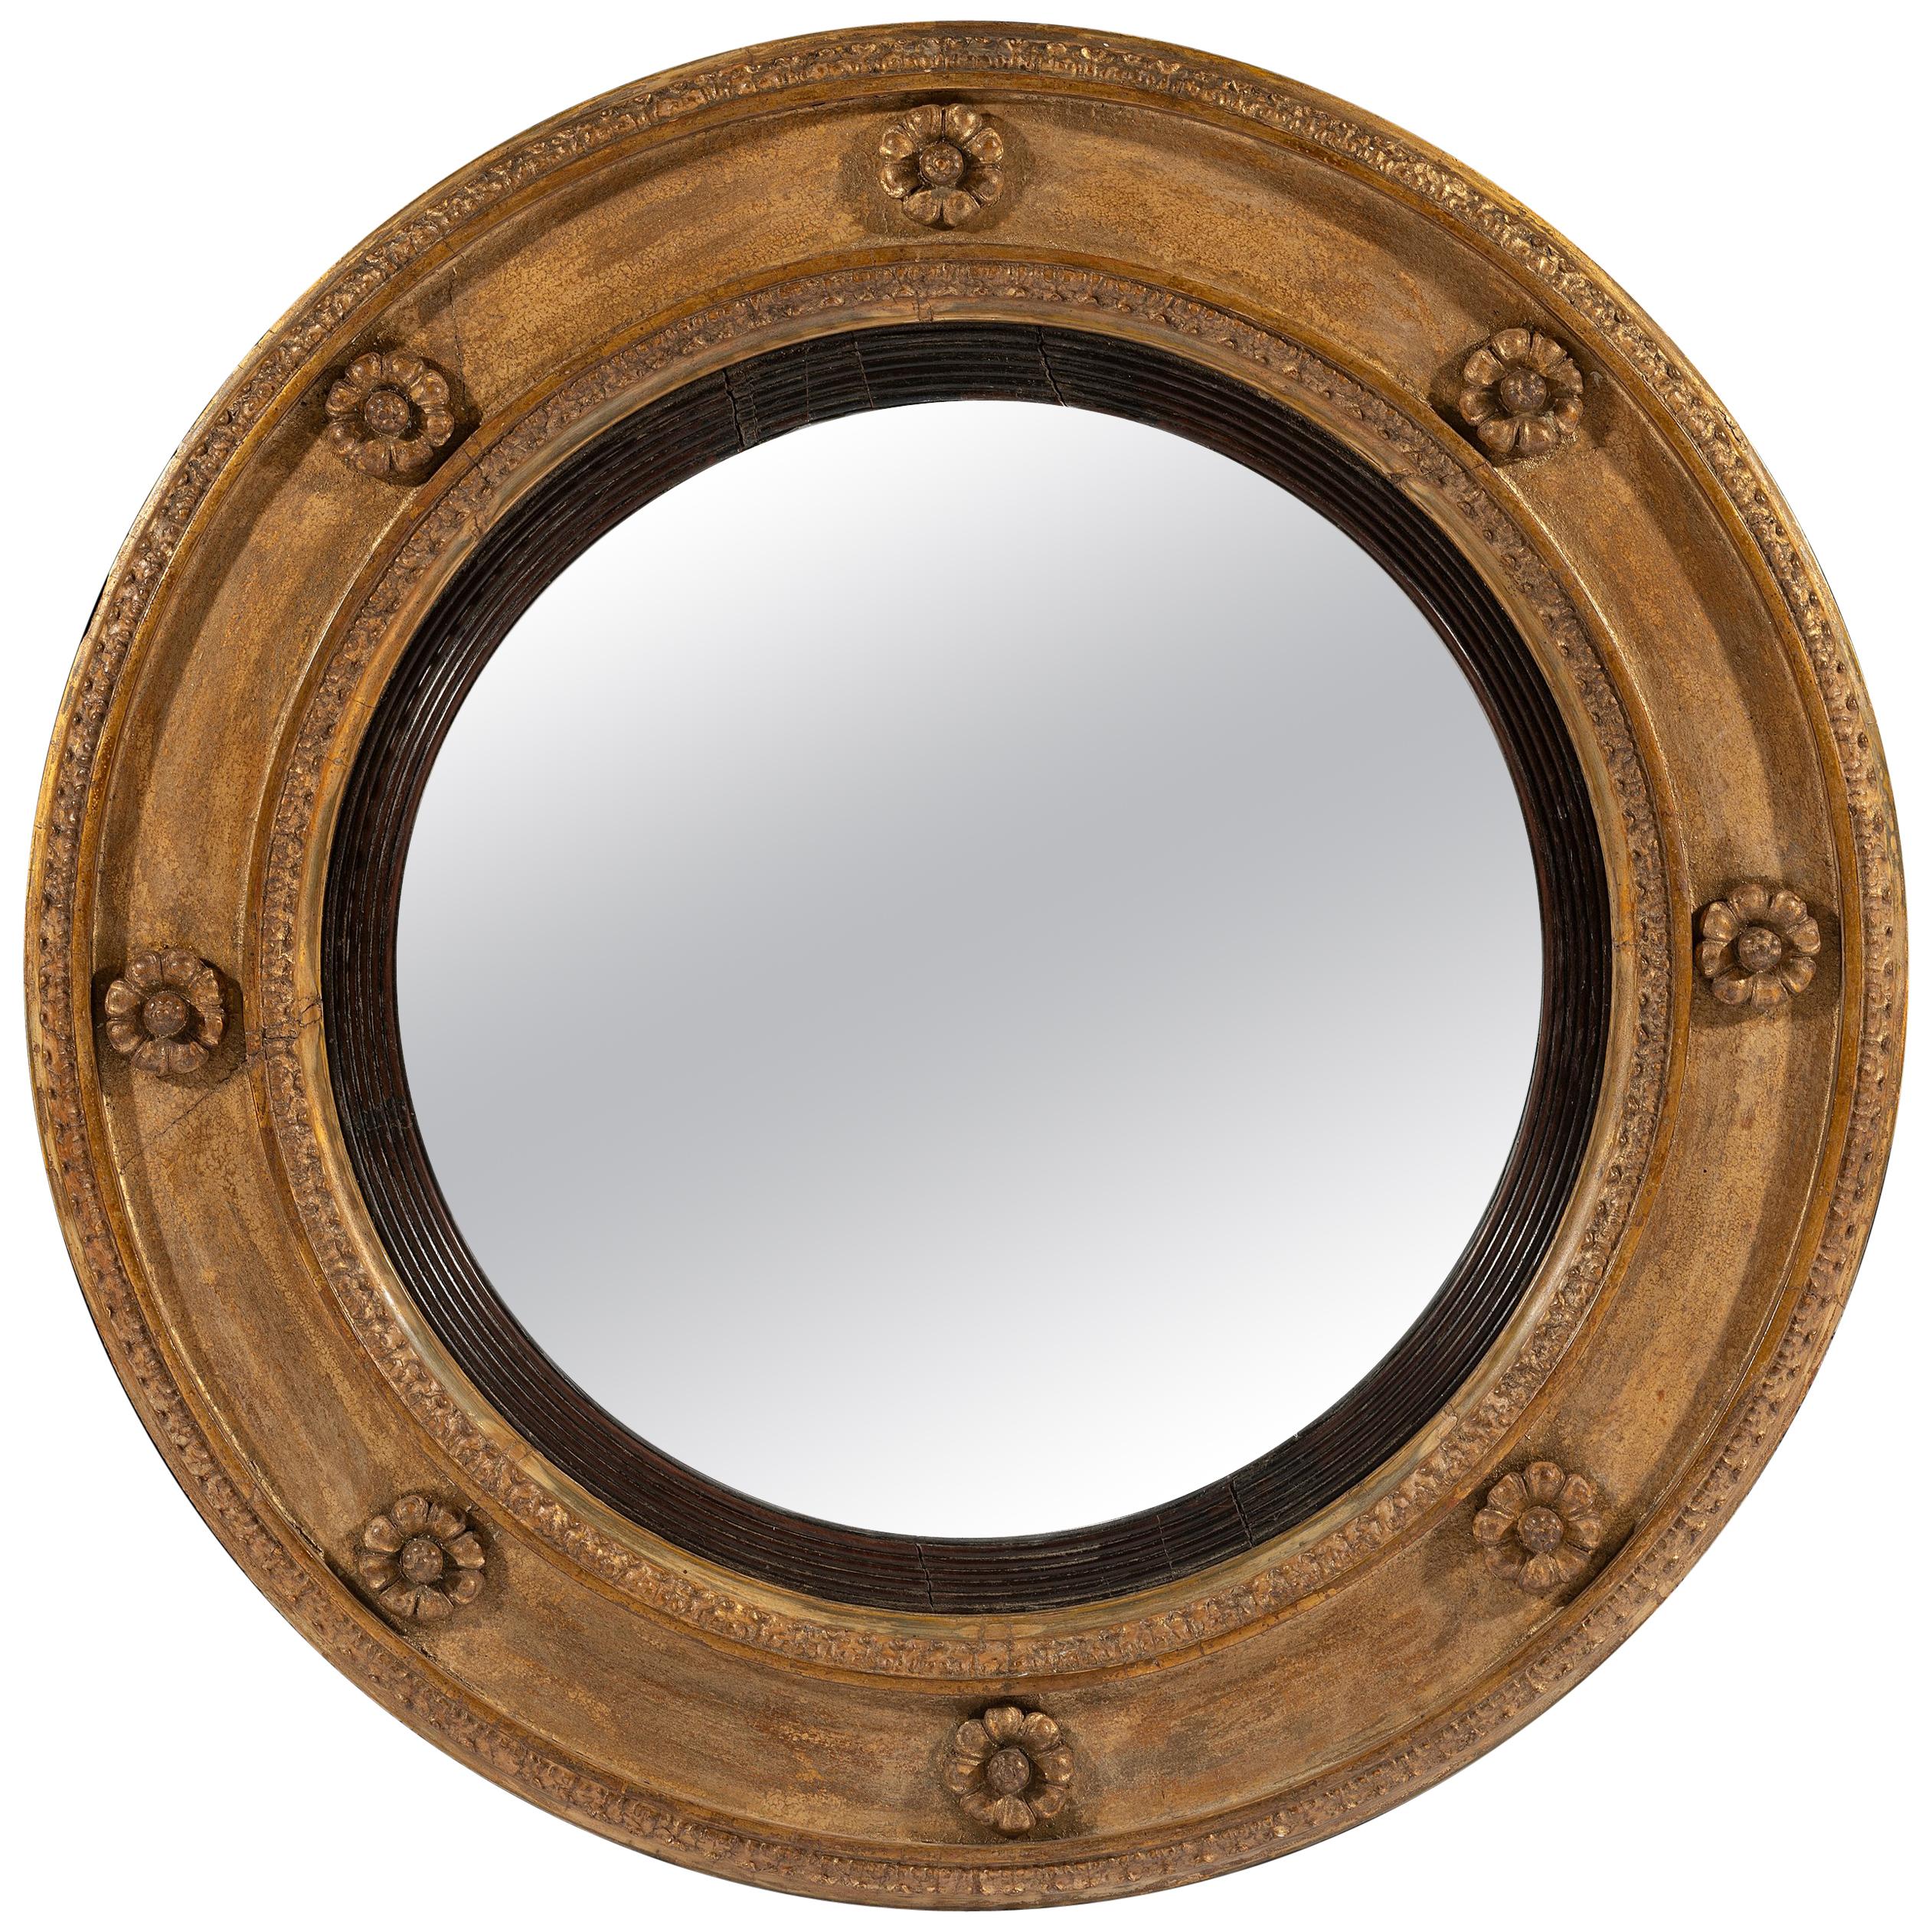 Late George III 18th Century Period Circular Giltwood Mirror